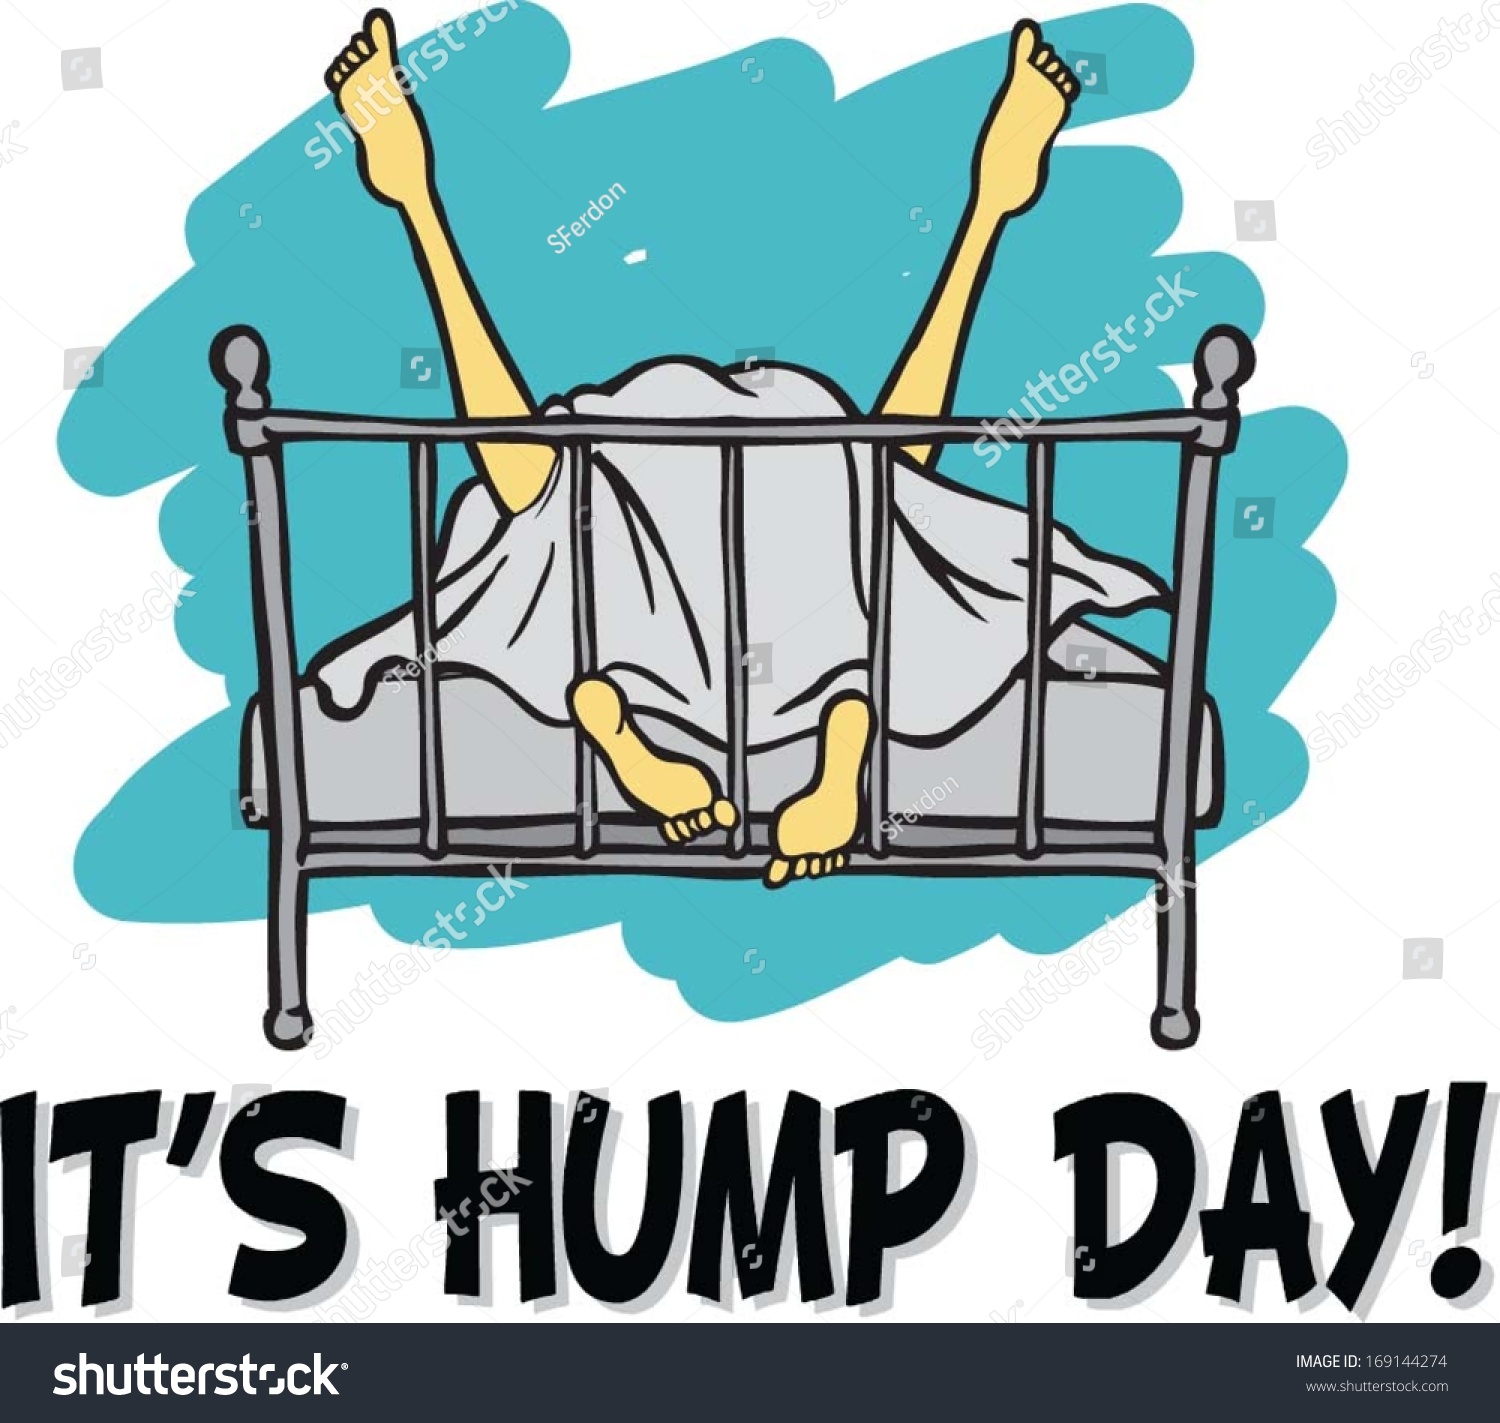 alicia caramenico recommends Happy Hump Day Sex